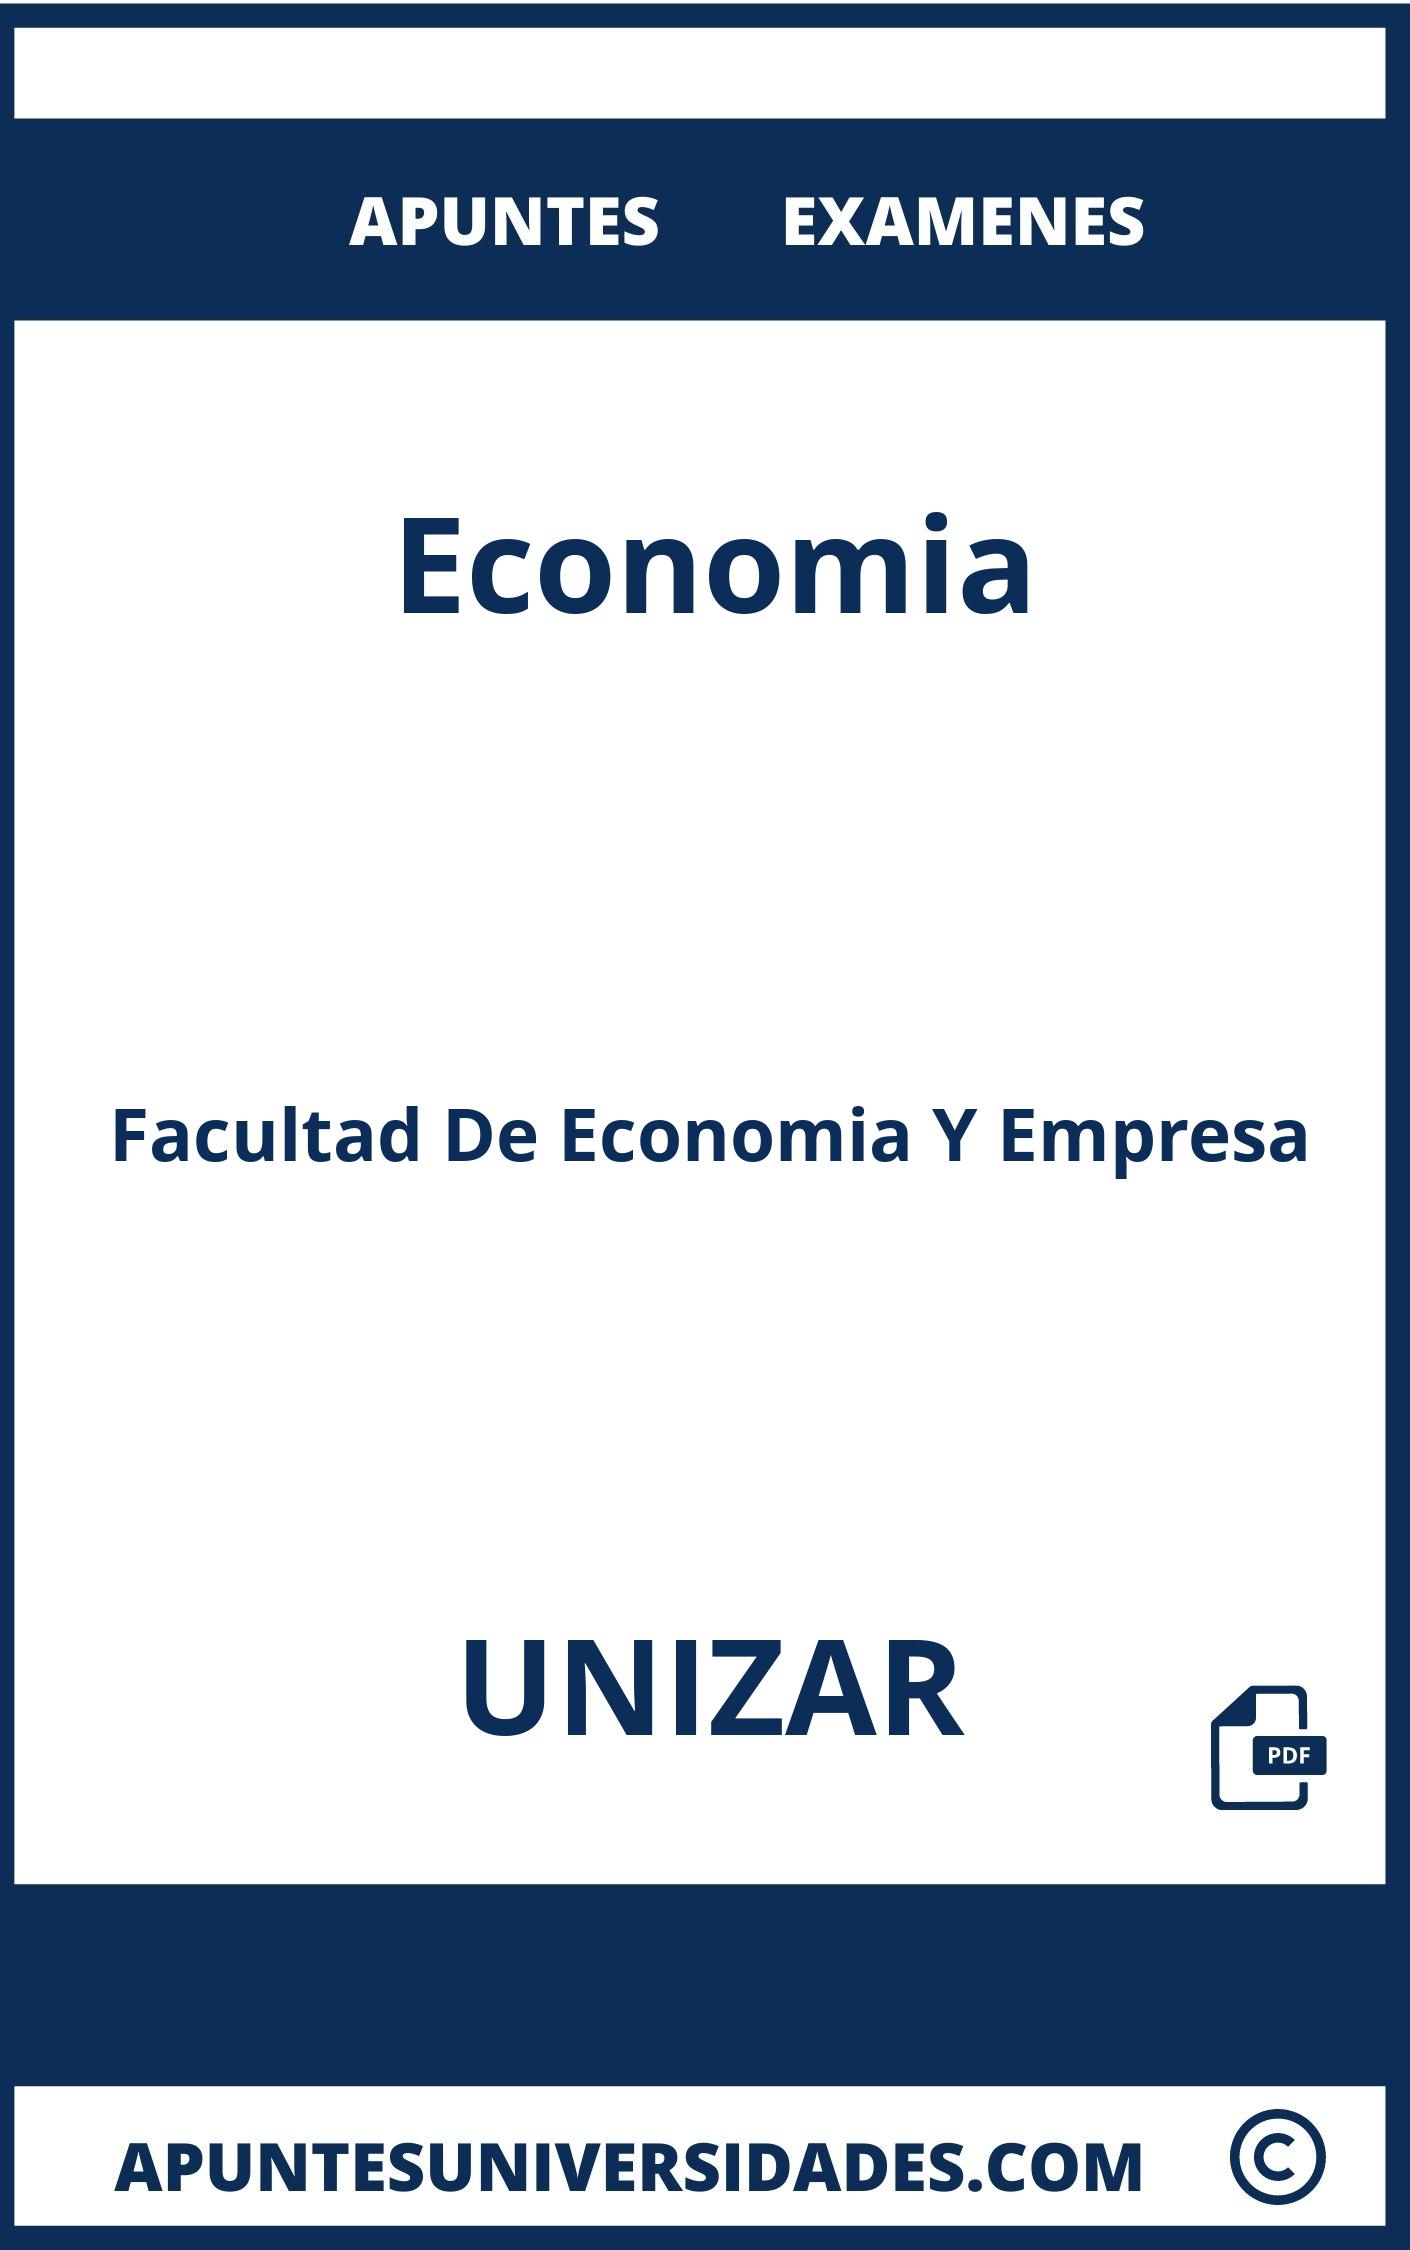 Examenes y Apuntes de Economia UNIZAR